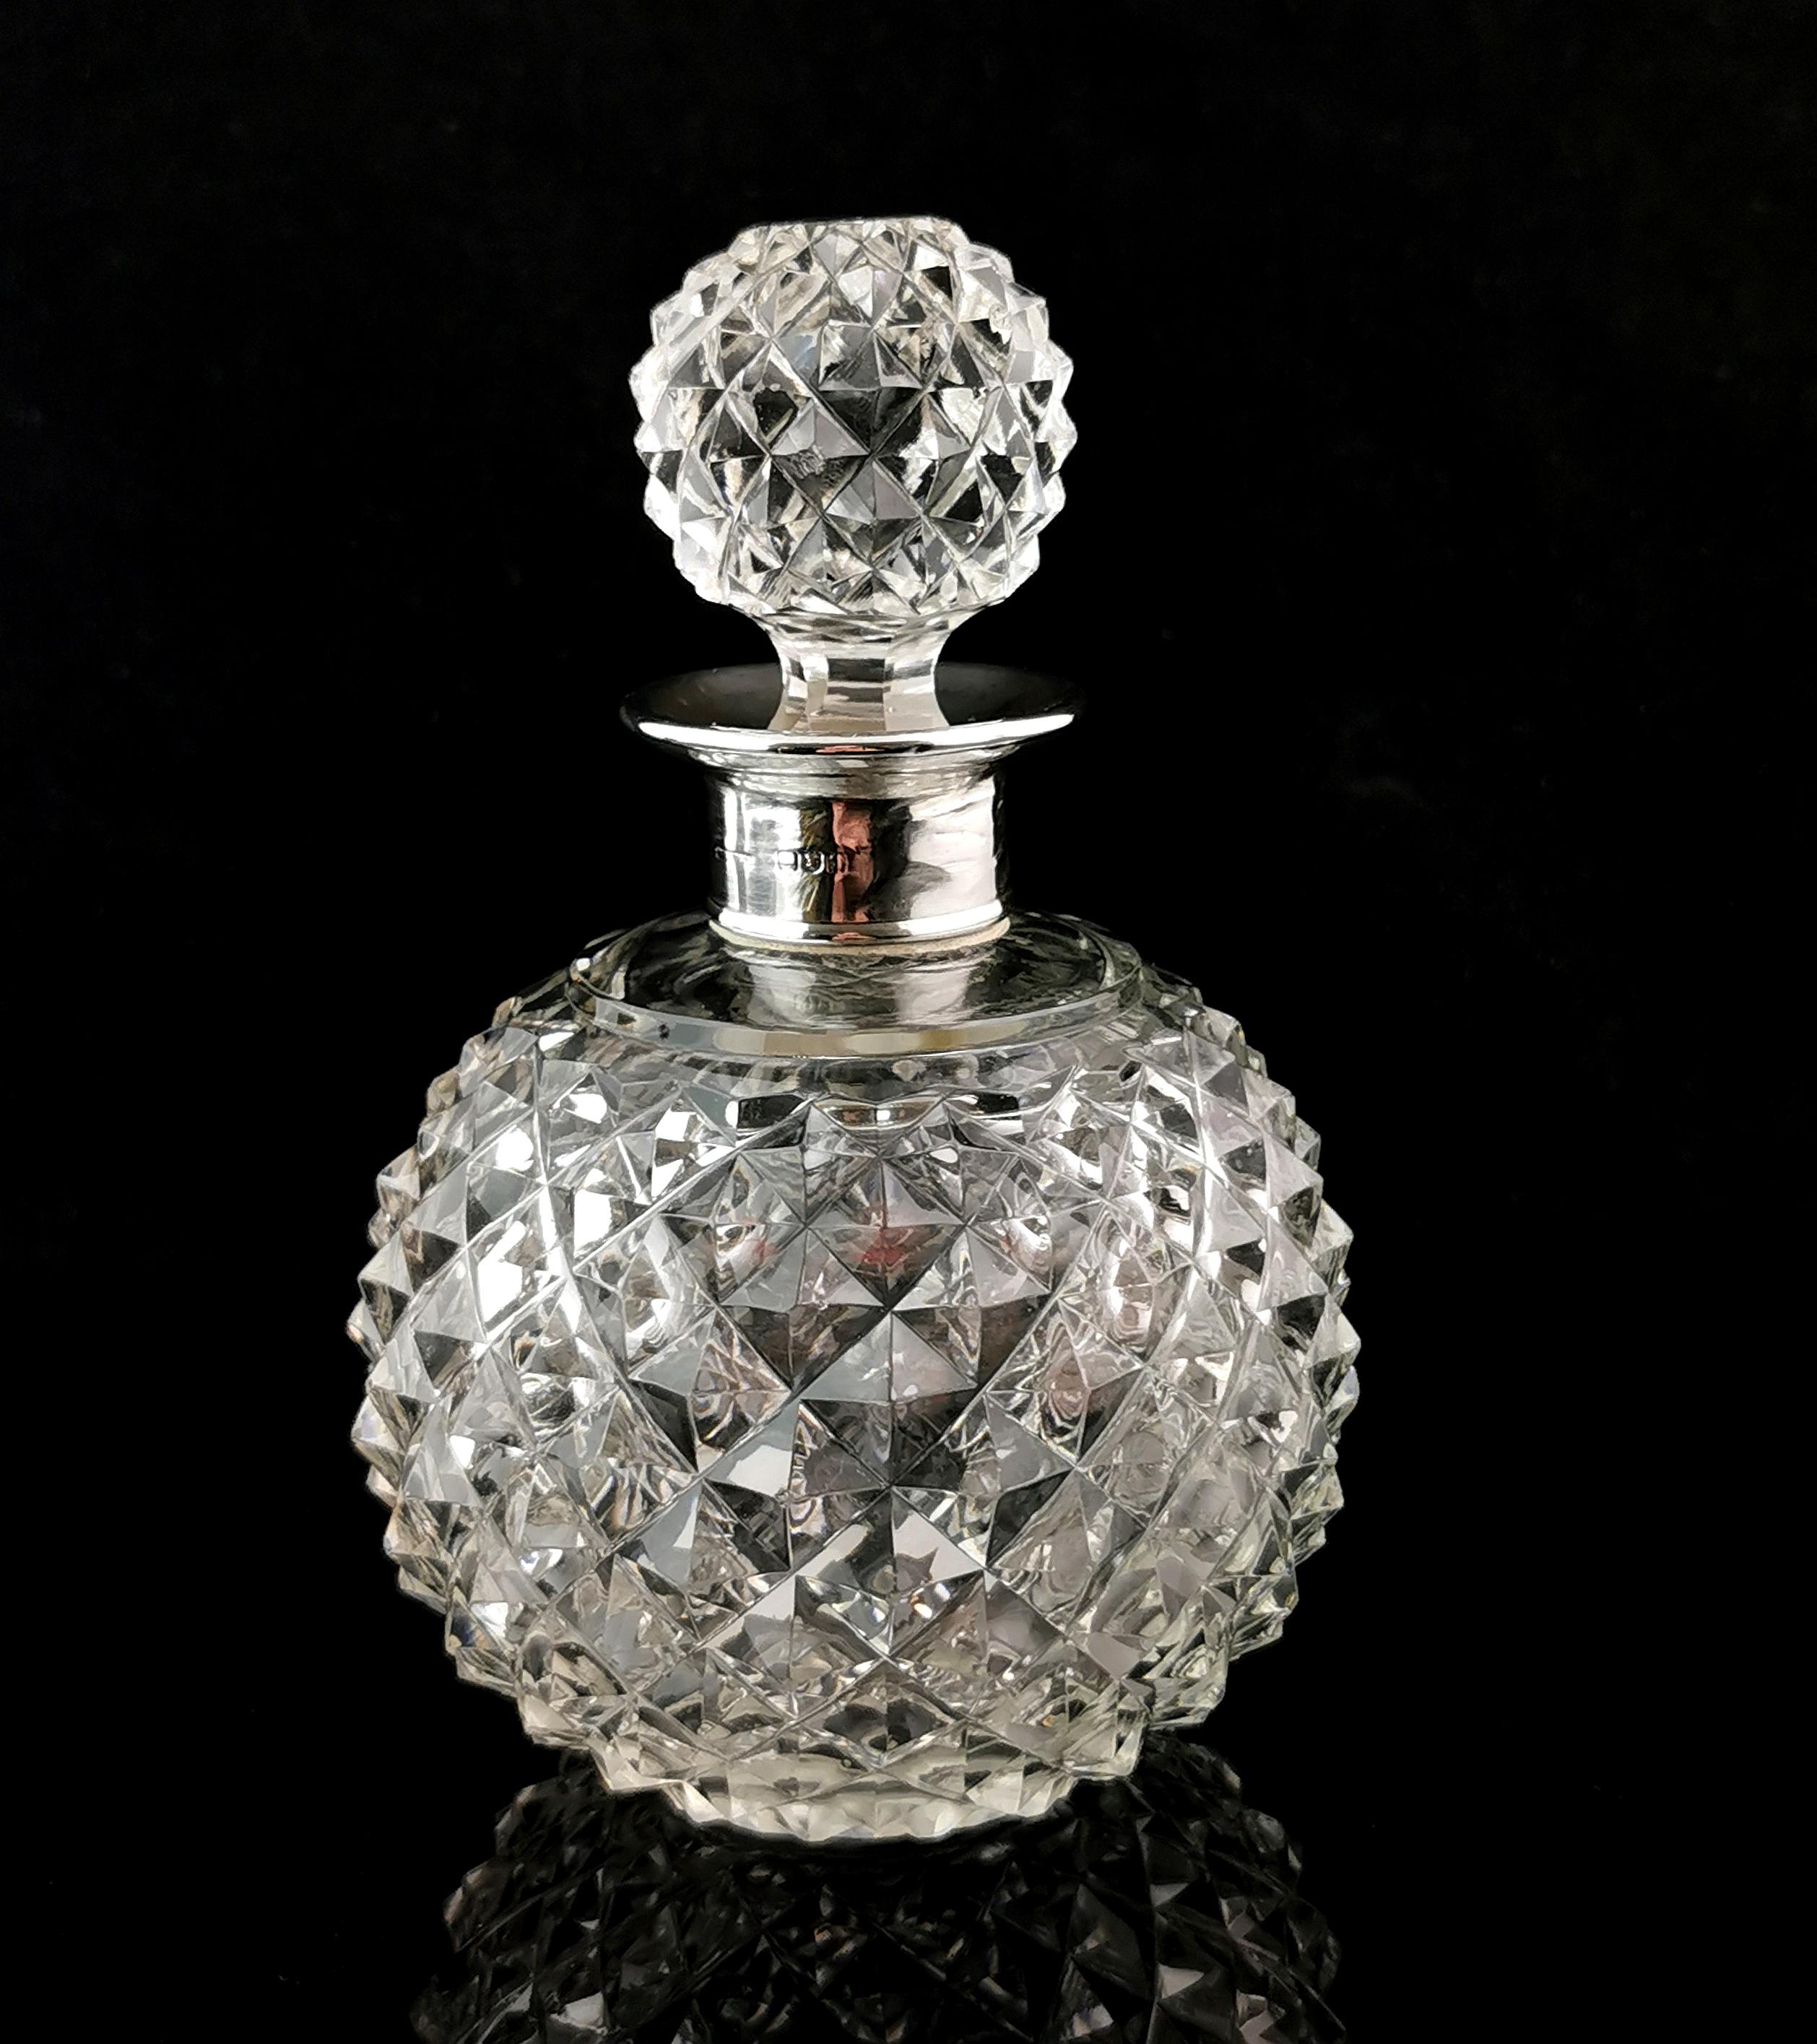 Un superbe flacon de parfum de l'époque victorienne.

Il s'agit d'une grande bouteille de forme globulaire dont le corps et le bouchon assorti présentent une merveilleuse taille à facettes. Ce type de taille reflète magnifiquement la lumière et